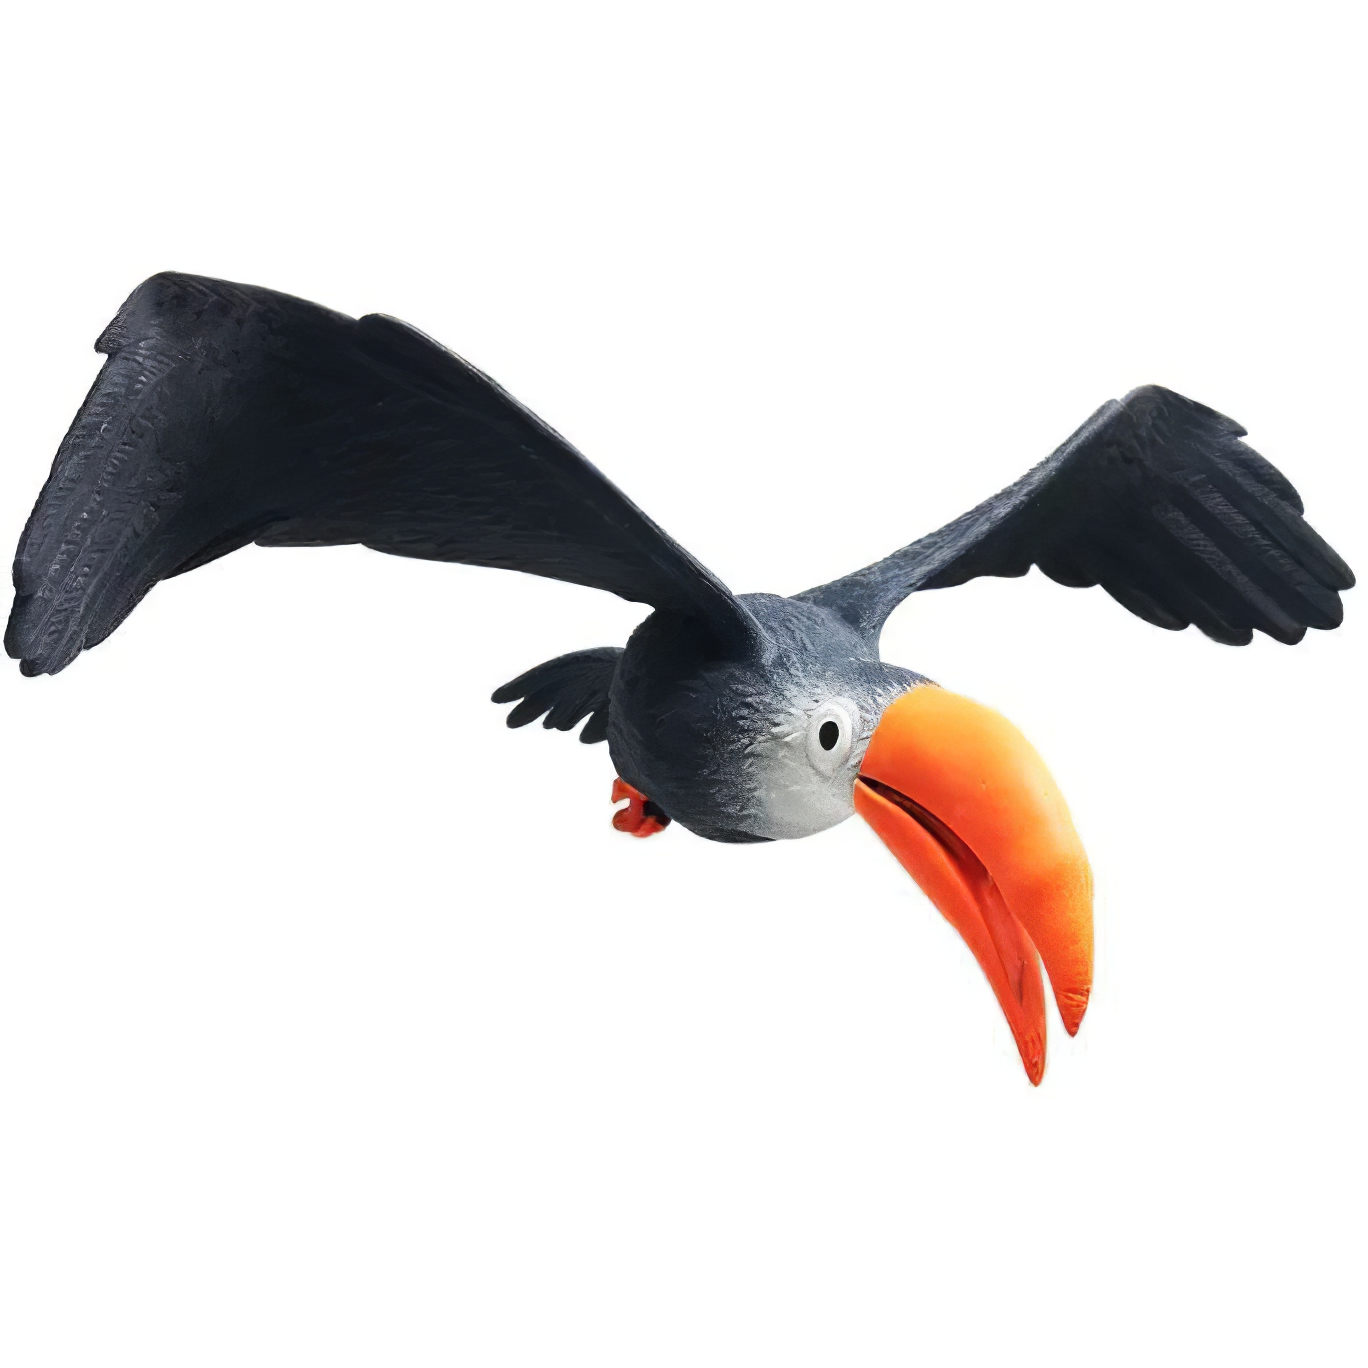 Стретч-игрушка сюрприз #sbabam Тропические птички 14-CN-2020 - фото 1